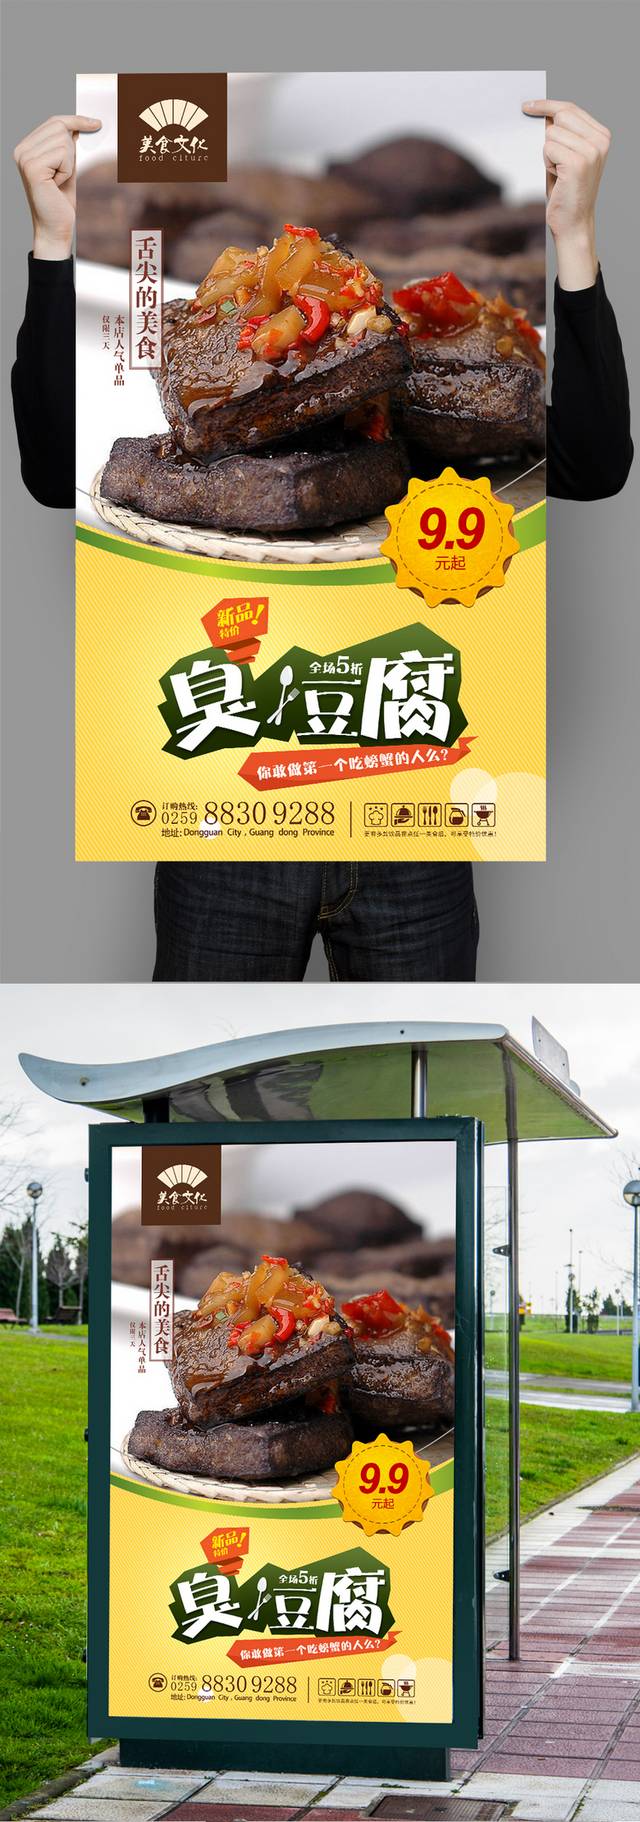 臭豆腐美食宣传海报设计